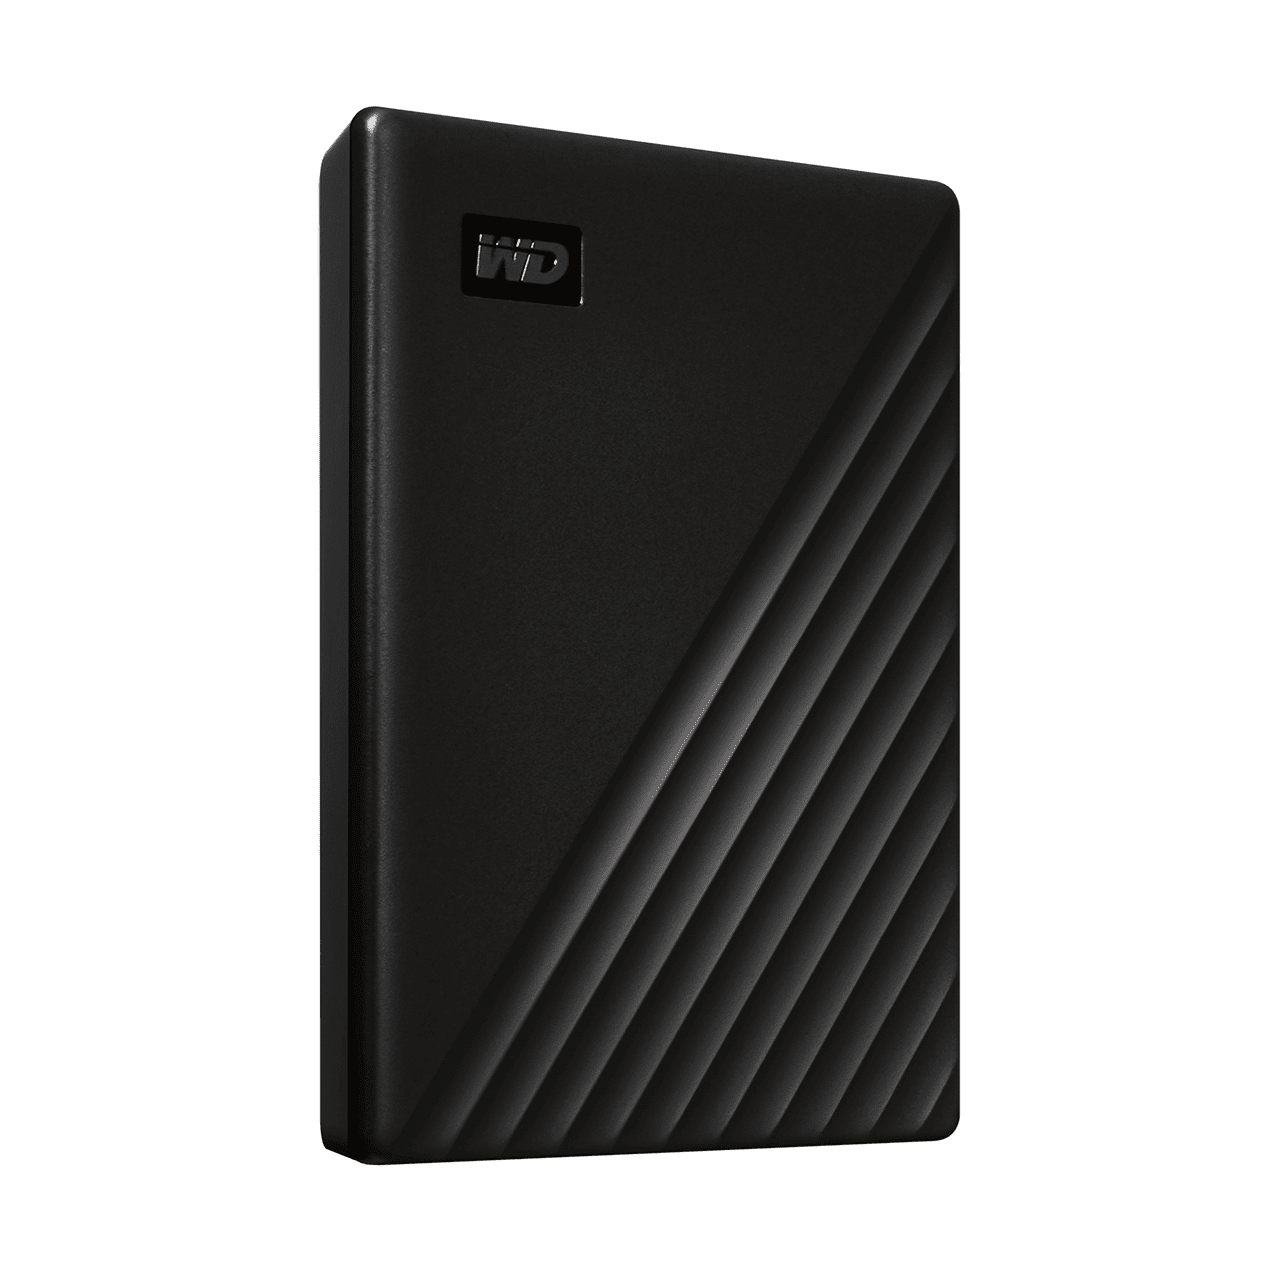 WD MyPassport 1Tb Portable USB 3.2 Hard Drive (Black)